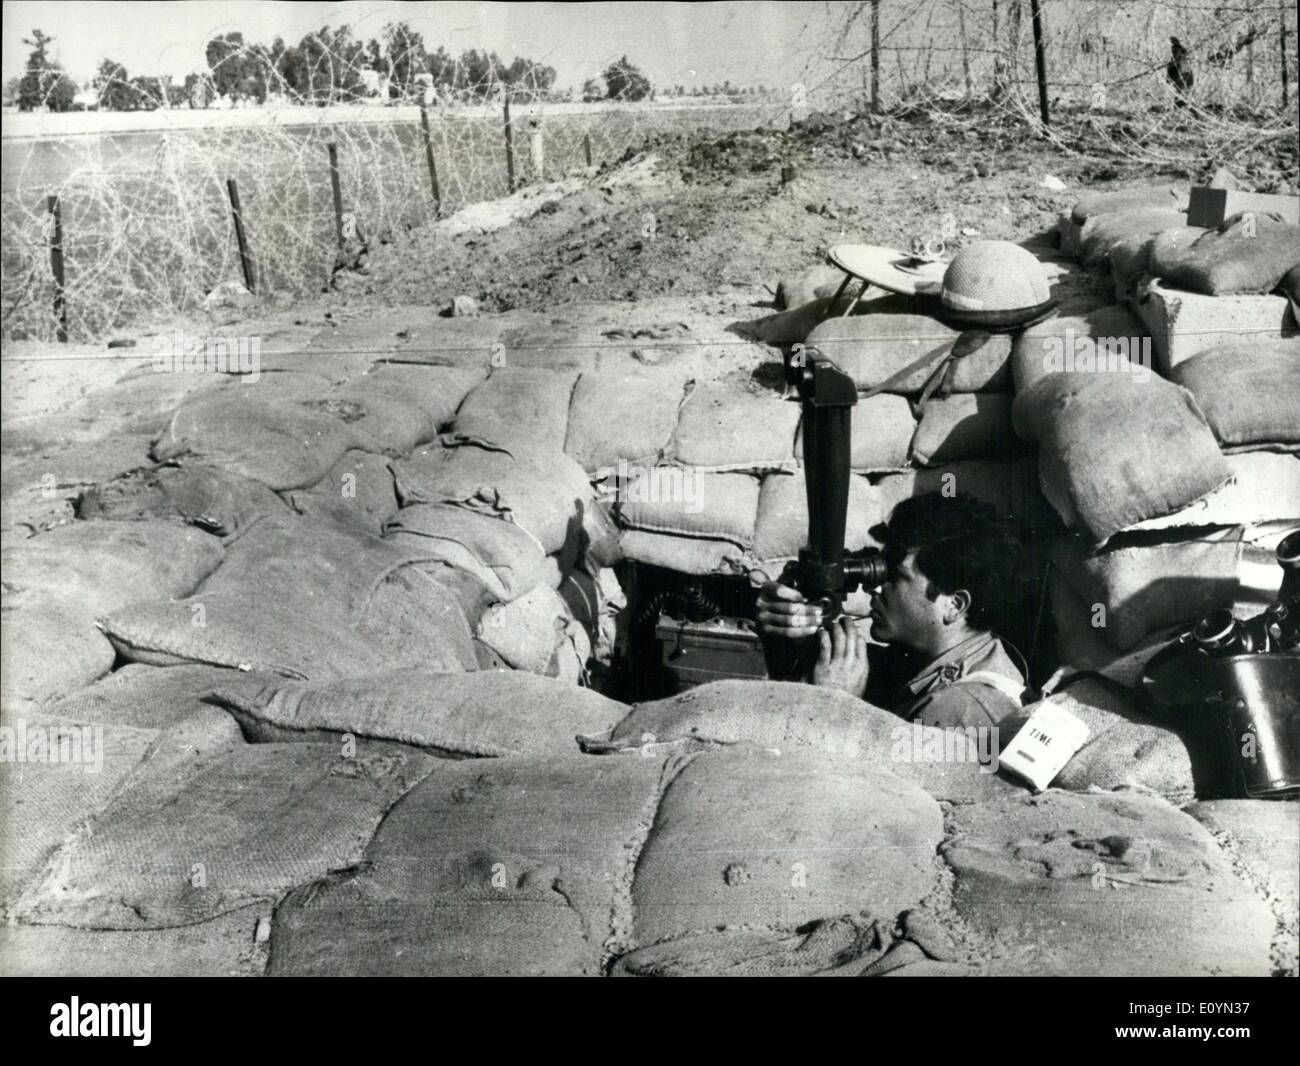 Nov. 11, 1970 - tutto tranquillo sul fronte di Suez. Anche se vi è un cessate il fuoco, un avviso watch è mantenuta da parte delle forze israeliane, come si vede dal soldato nel suo bunker in avanti. Foto Stock